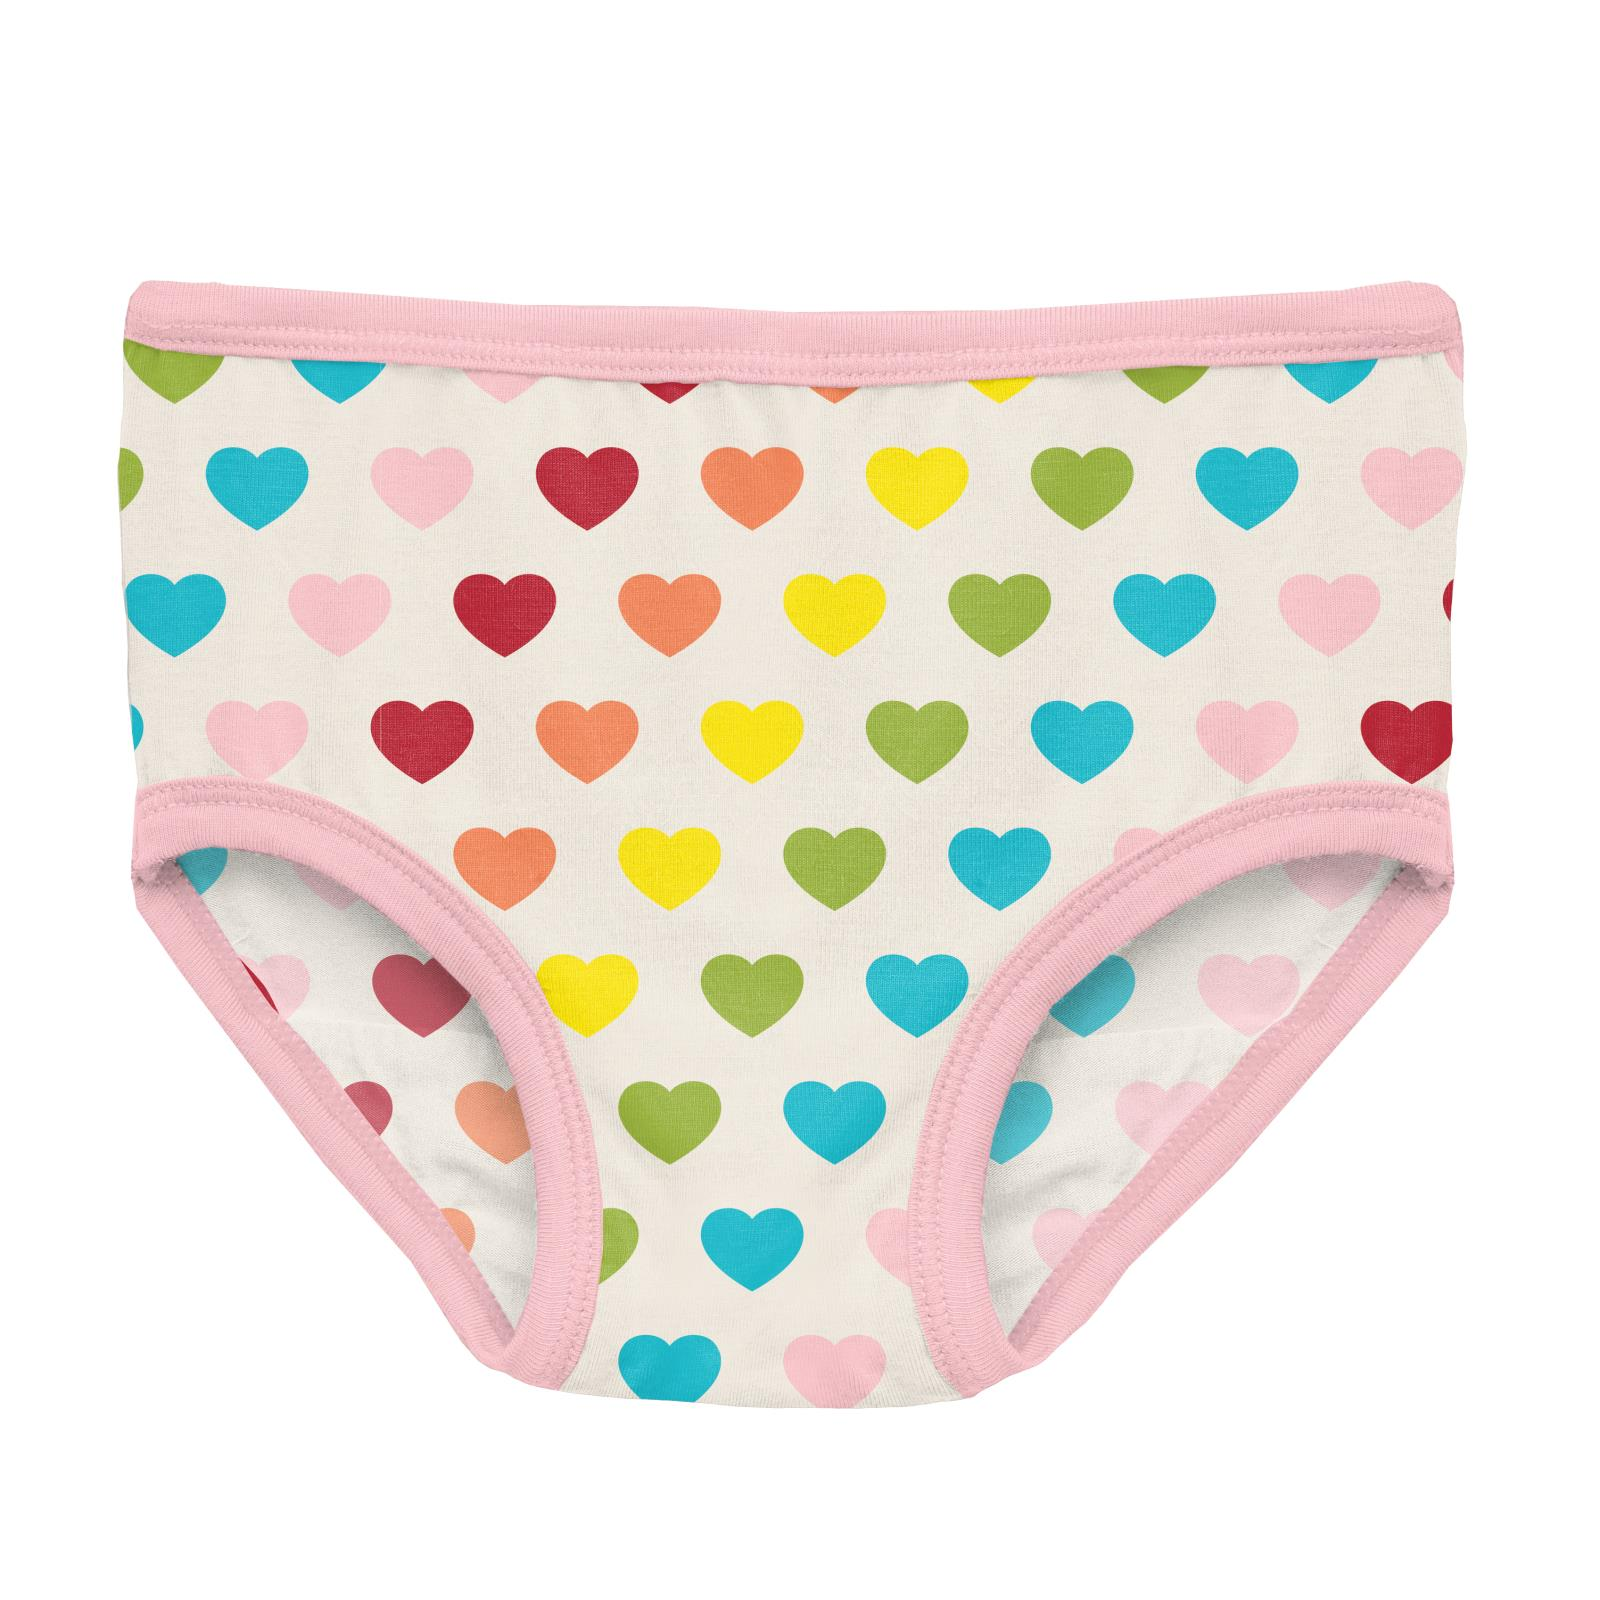 Kickee Pants Lotus Happy Teddy Print Girl's Underwear